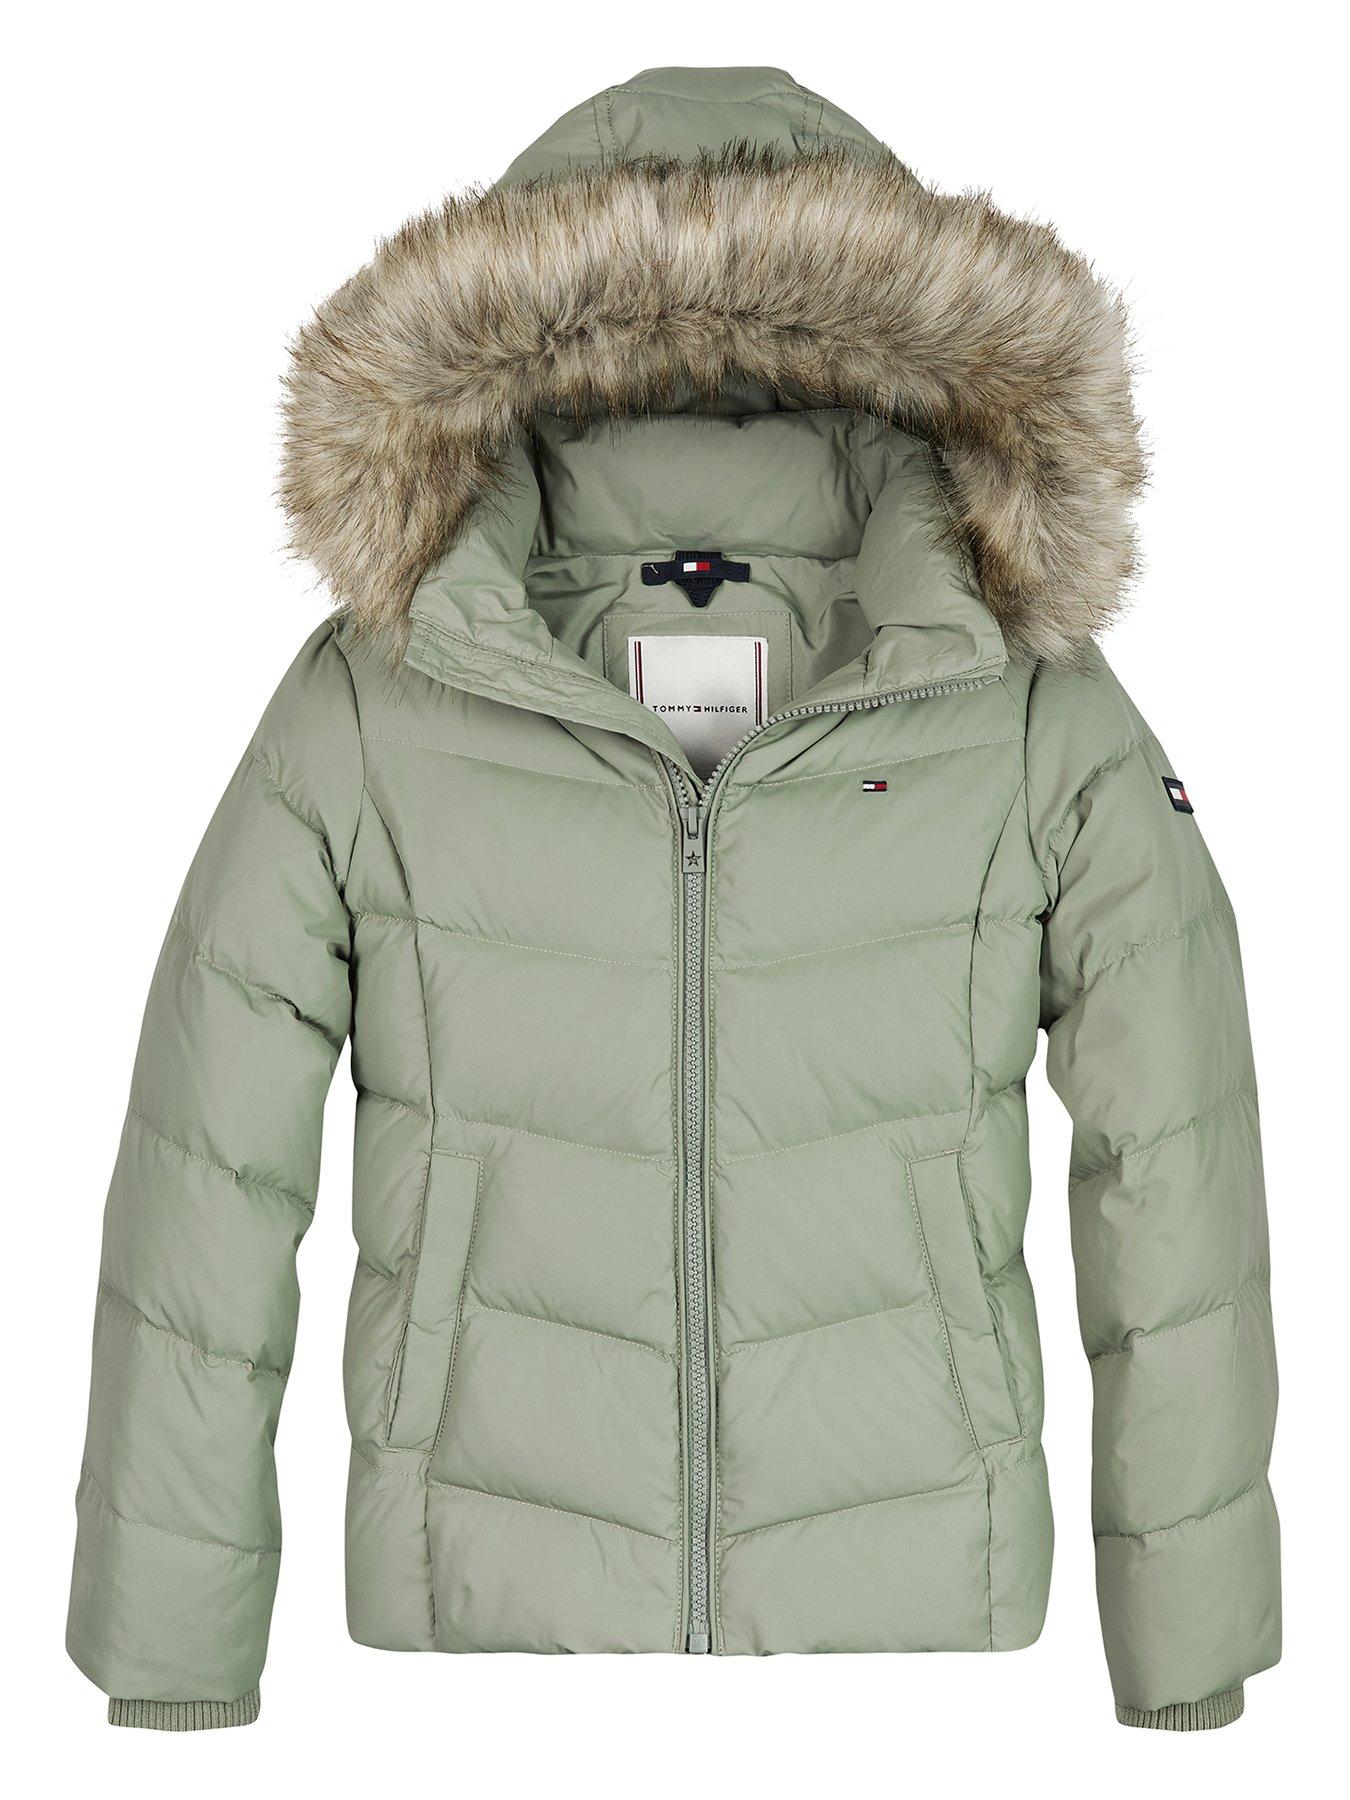 UK Seller New Warm Girls Kids Fashion Pretty Jacket Coat Outwear  3-8 Years 3003 